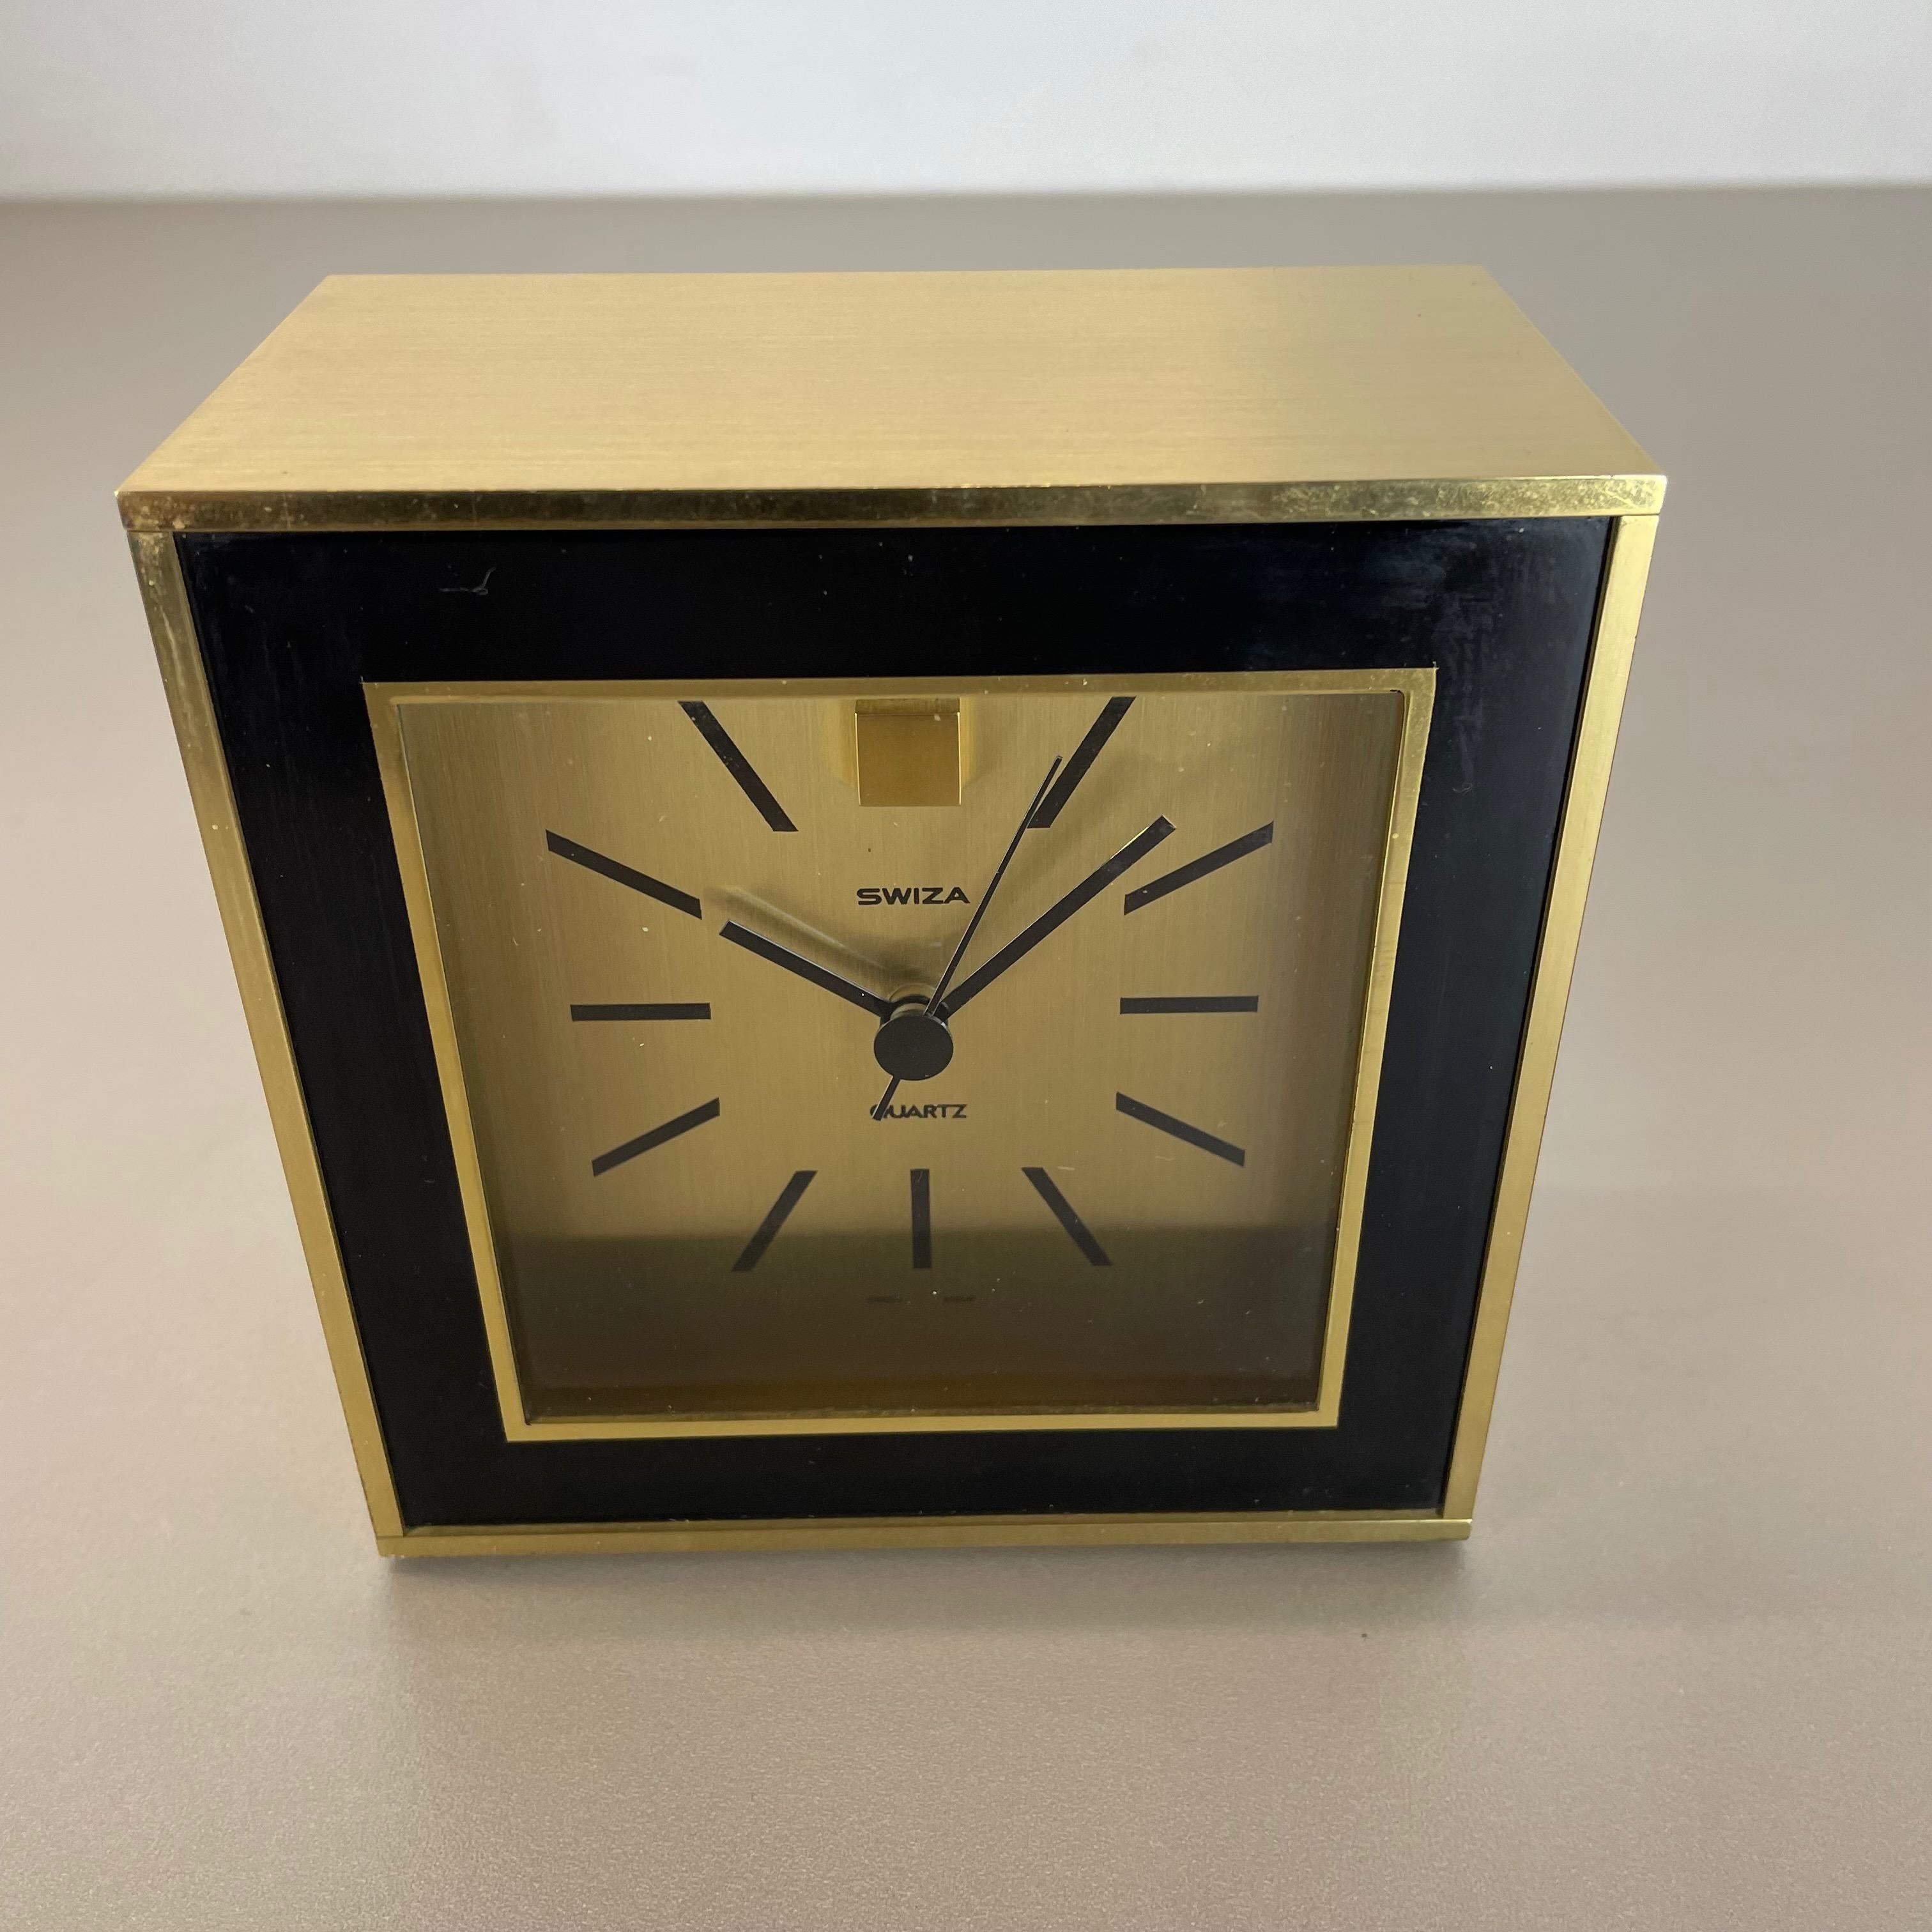 Mid-Century Modern Vintage Modernist Wooden Brass Table Clock by Swiza, Switzerland 1970s